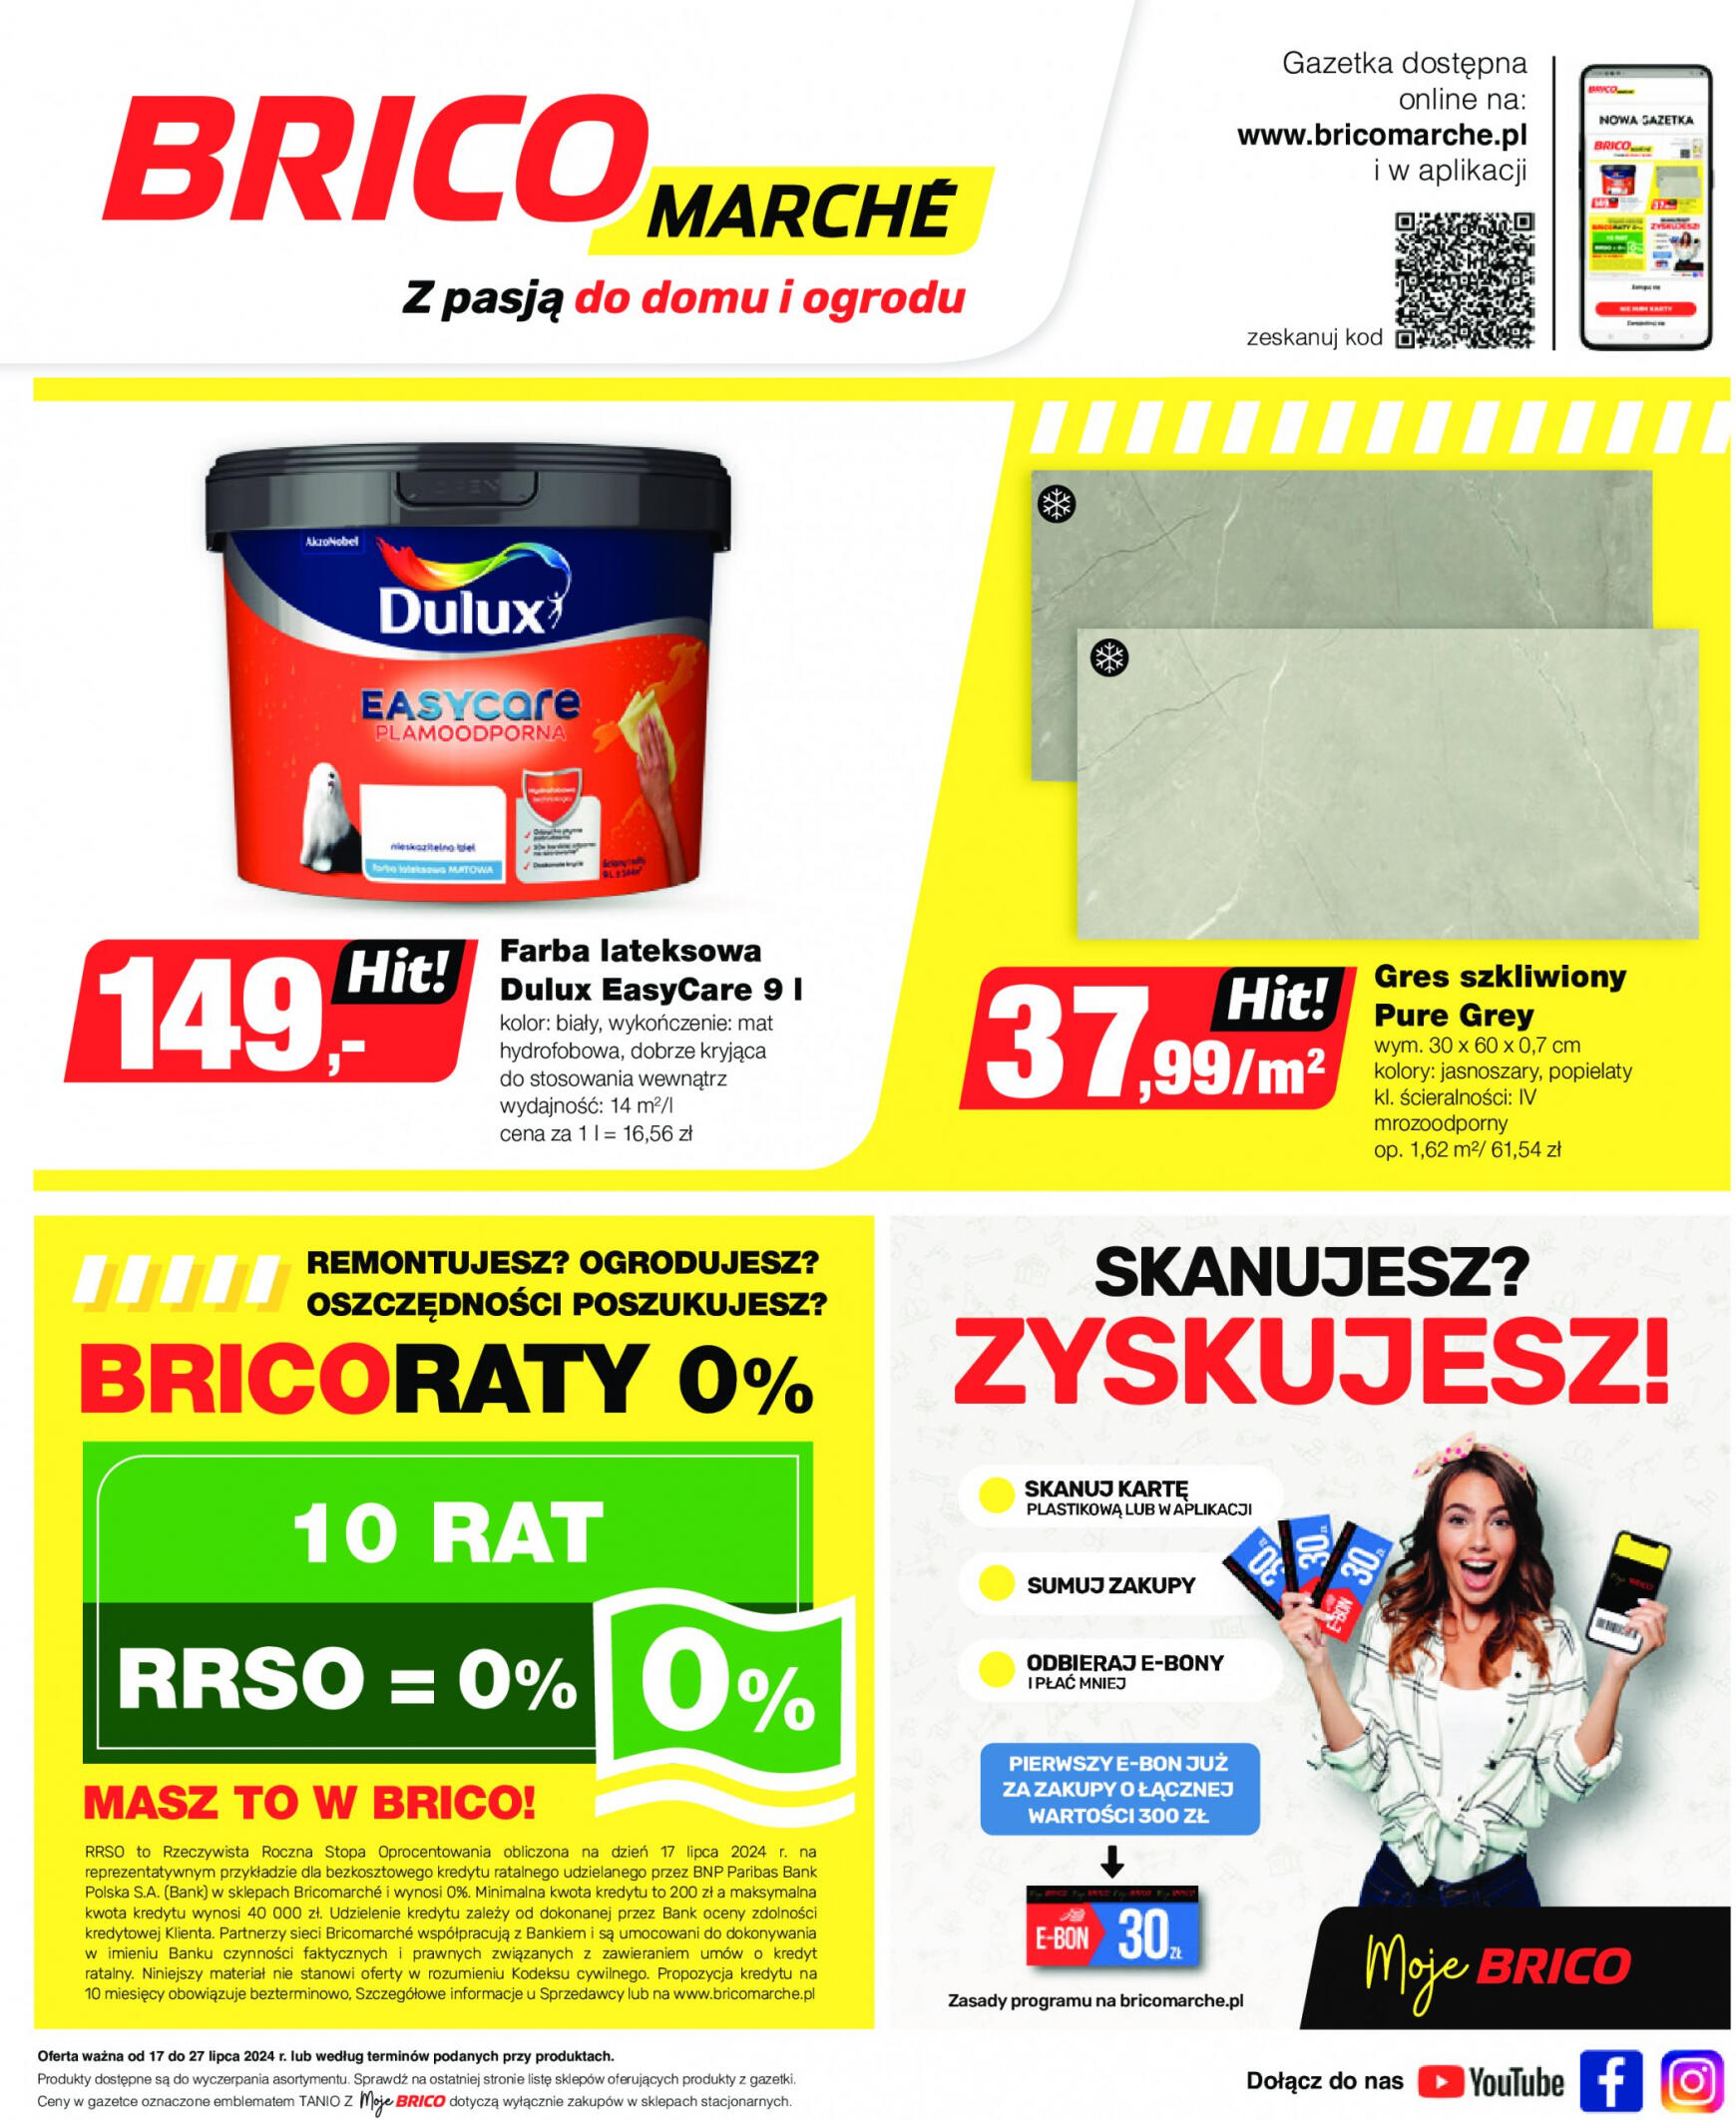 brico-marche - Bricomarché gazetka aktualna ważna od 17.07. - 27.07.